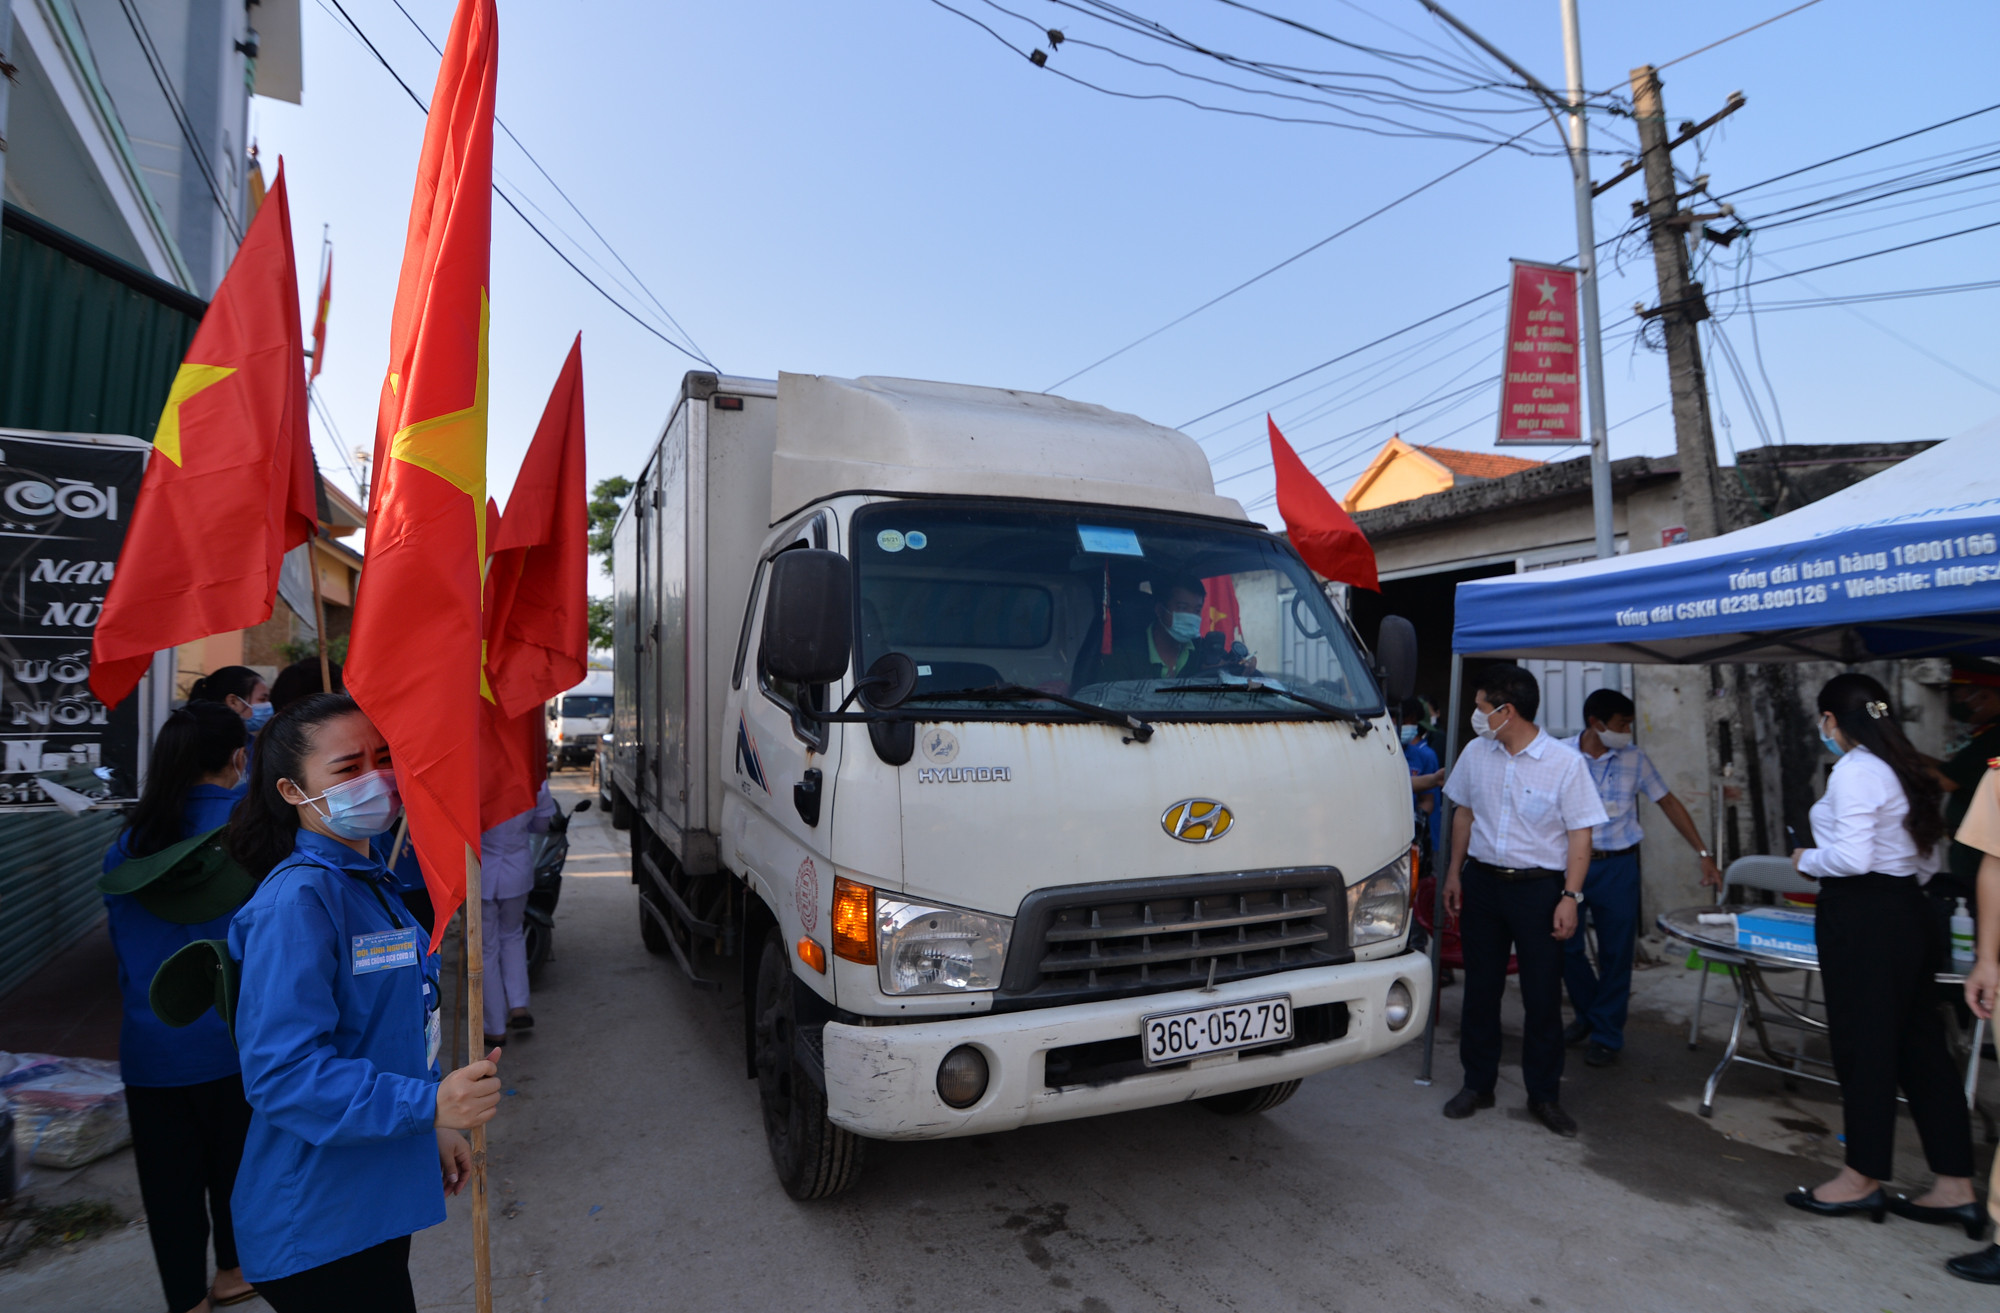 Sau nhiều ngày ách tắc, những chuyến xe đầu tiên, chở hàng thủy sản của ngư dân Quỳnh Lập rời đi.